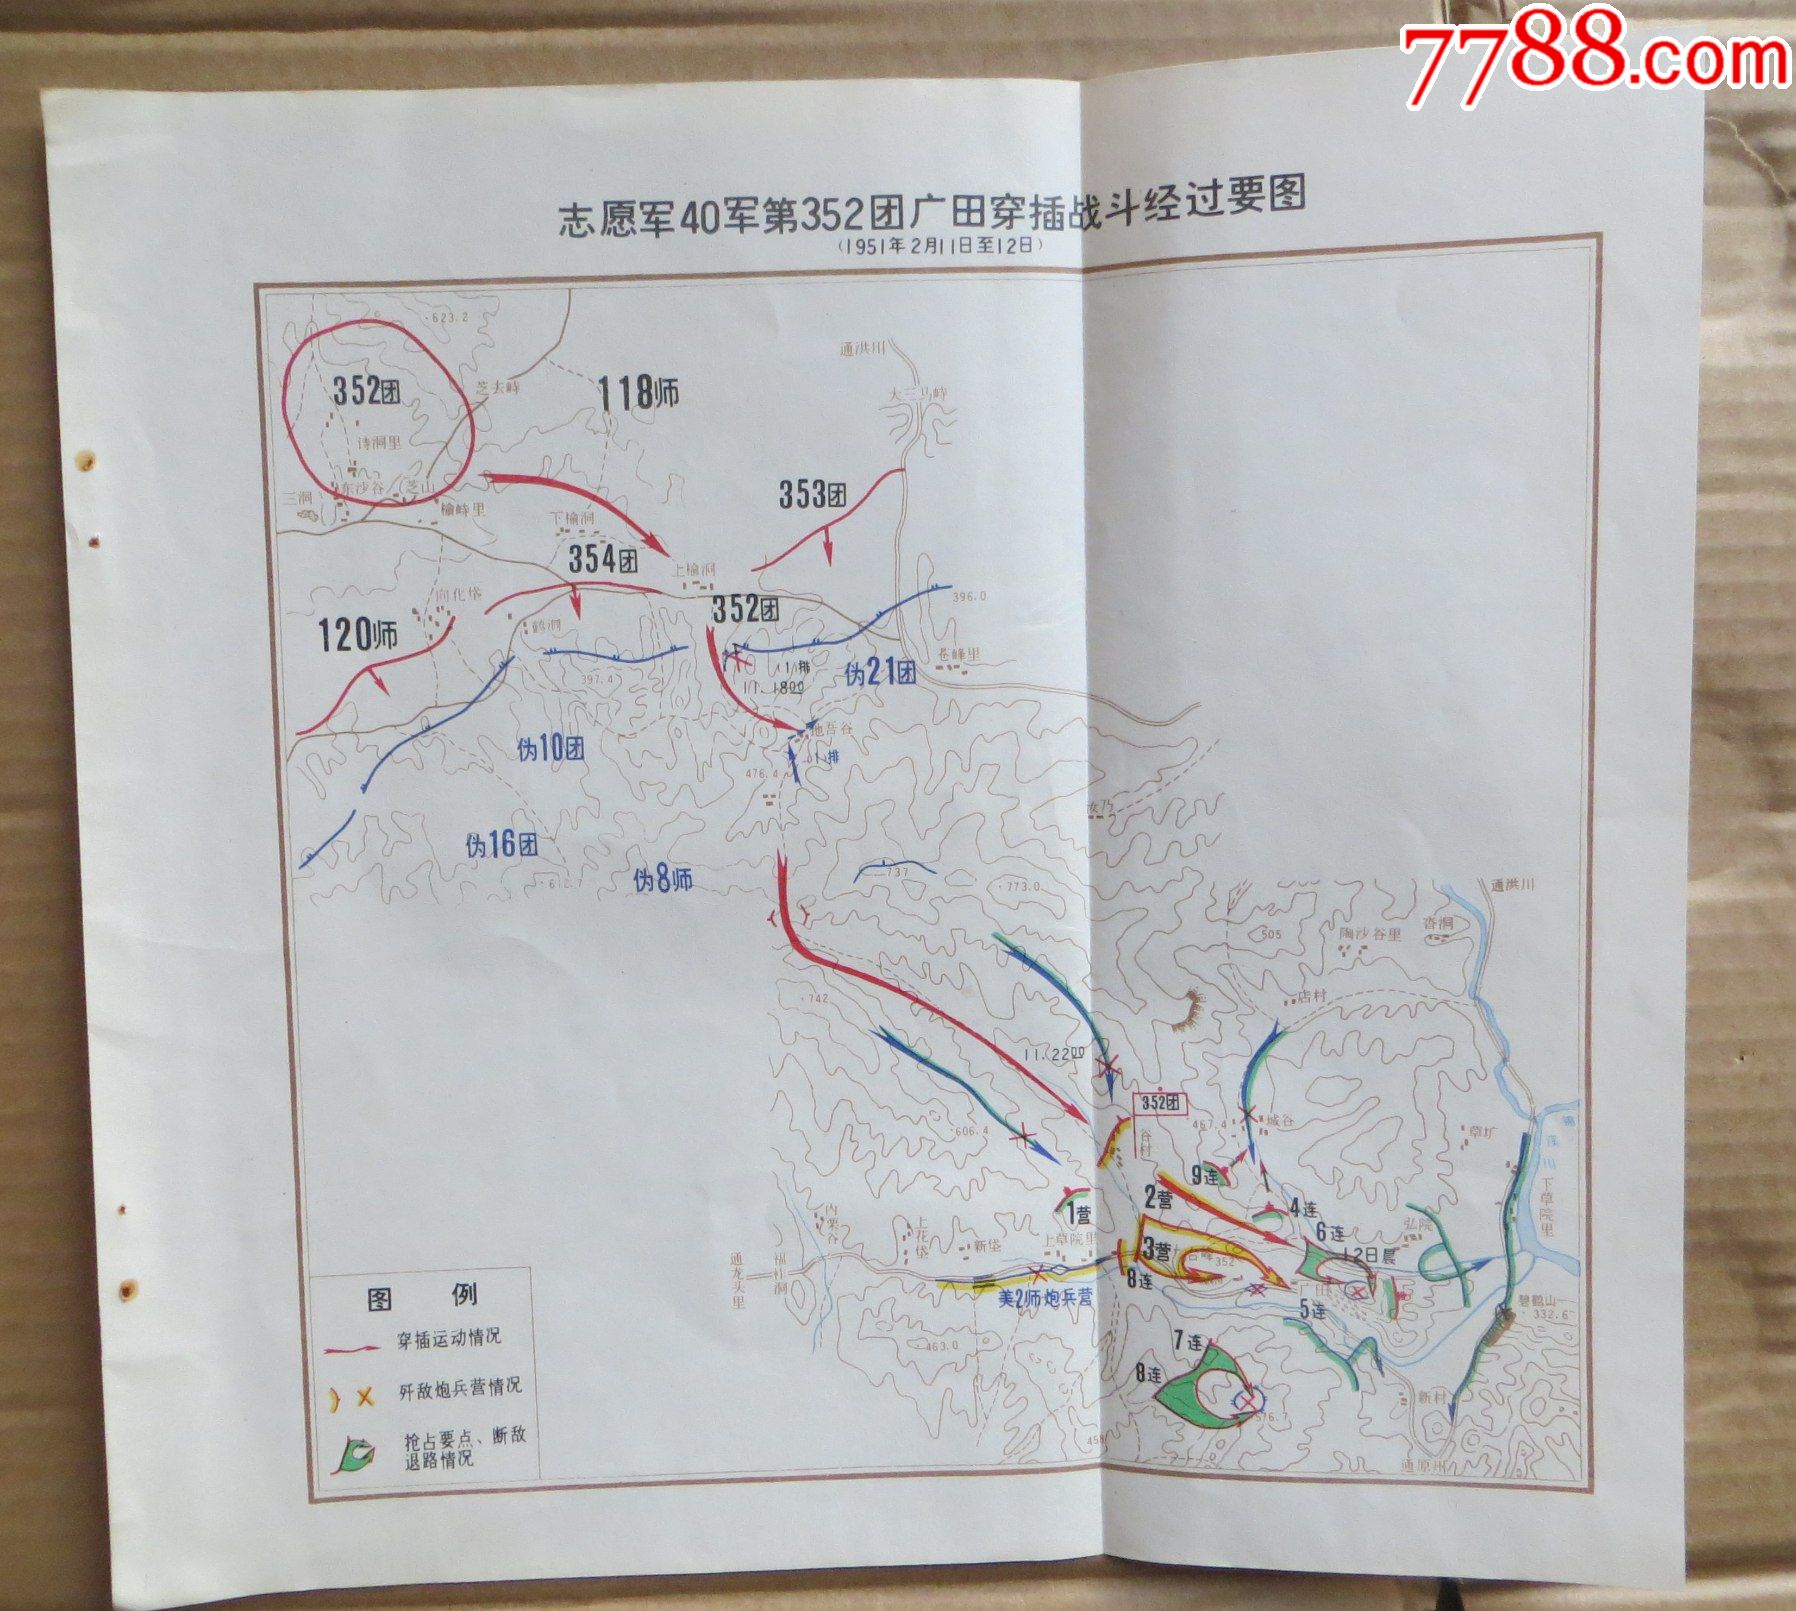 志愿军40军第352团广田穿插战斗经过要图